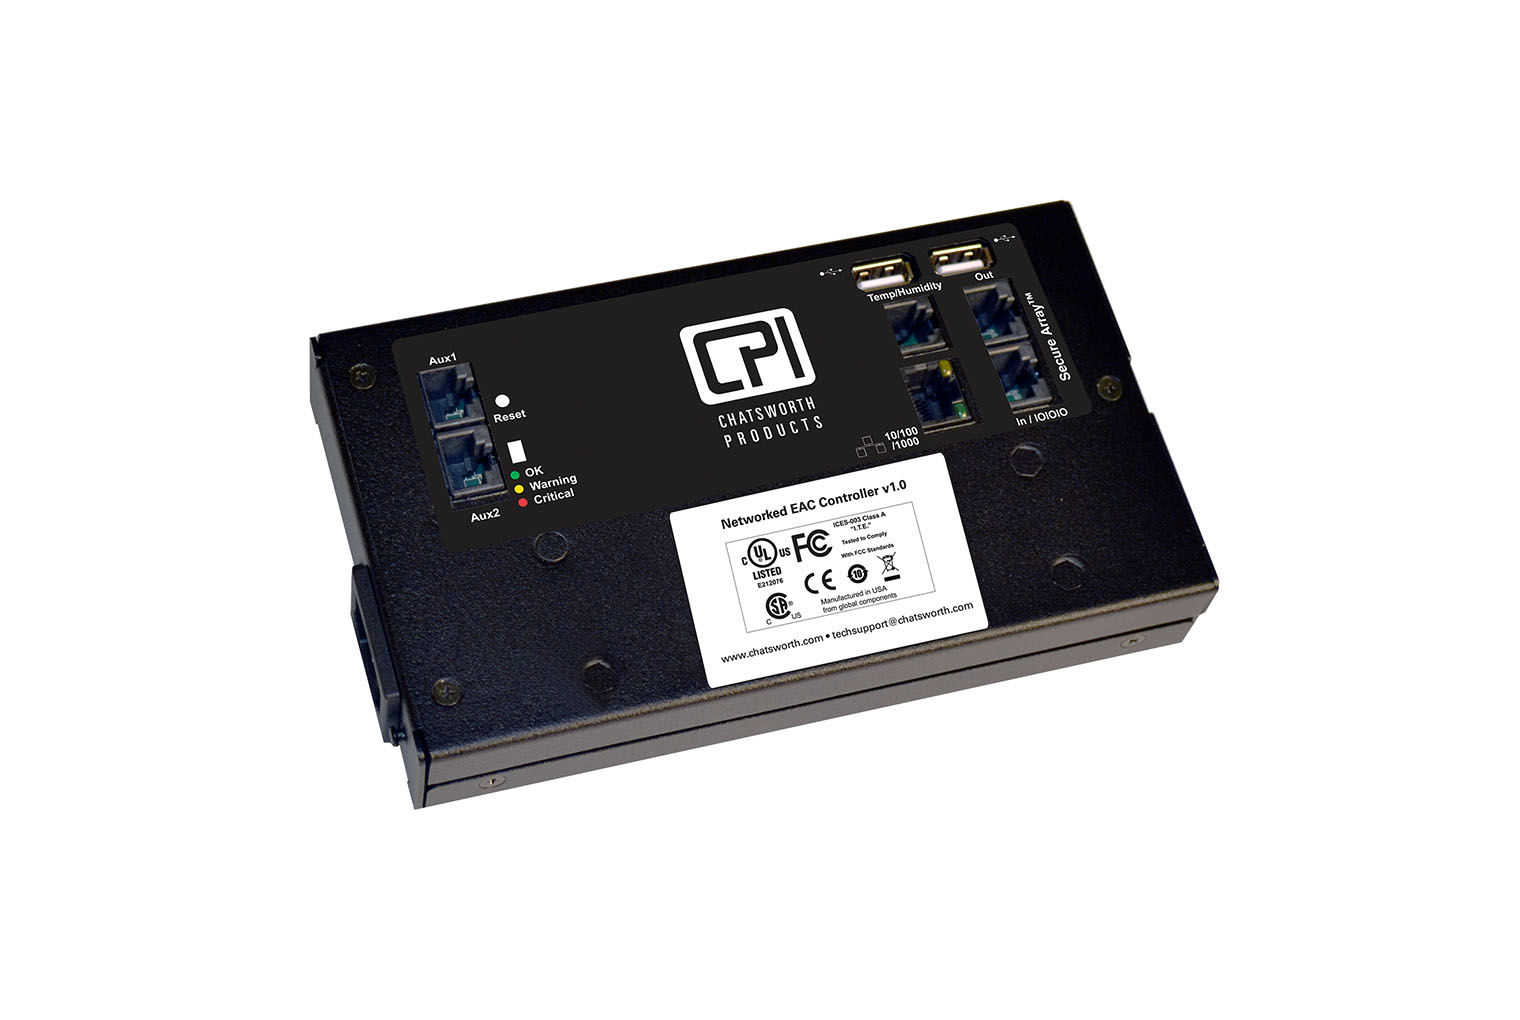 Kit de cerradura electrónica con RFID - Image 7